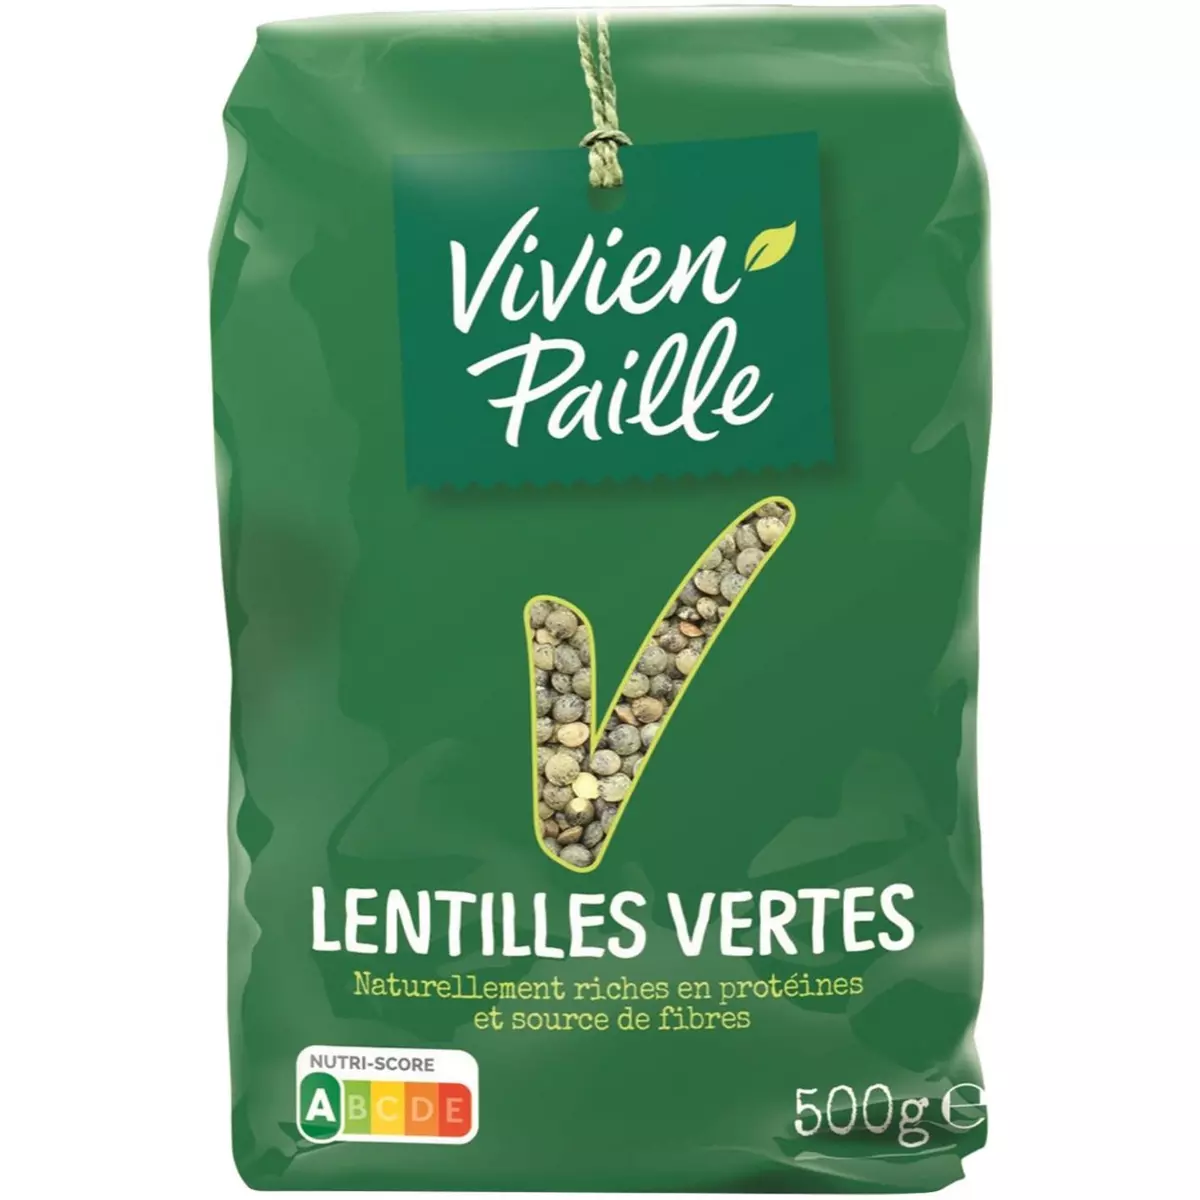 VIVIEN PAILLE Lentilles vertes 500g